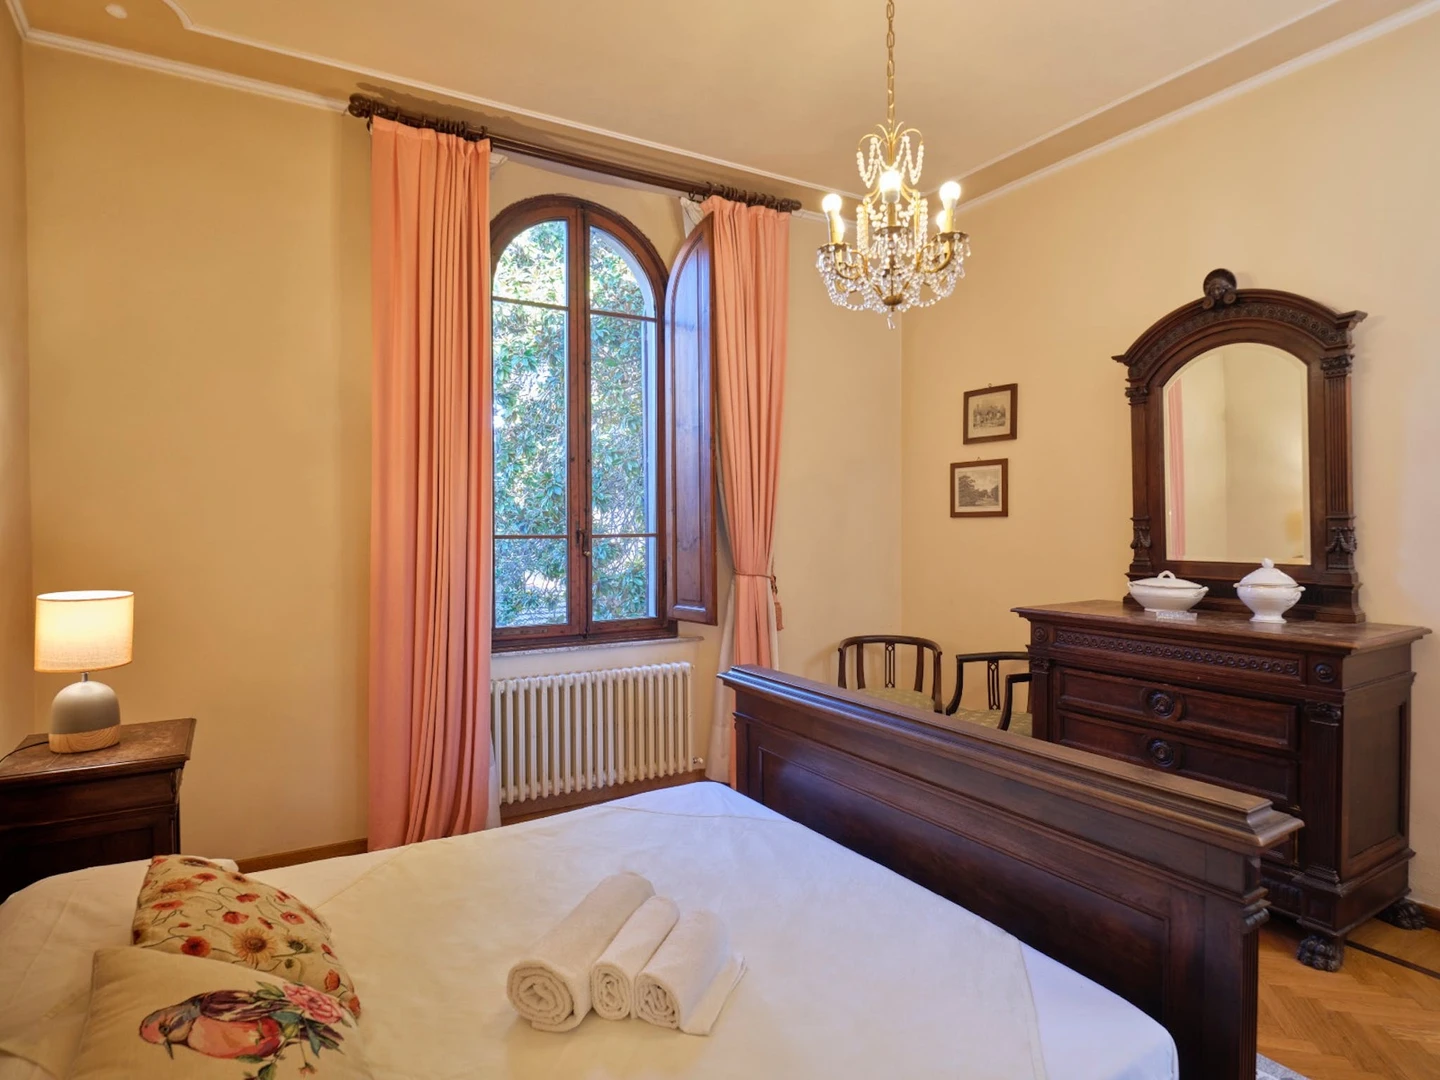 Alquiler de habitaciones por meses en Siena